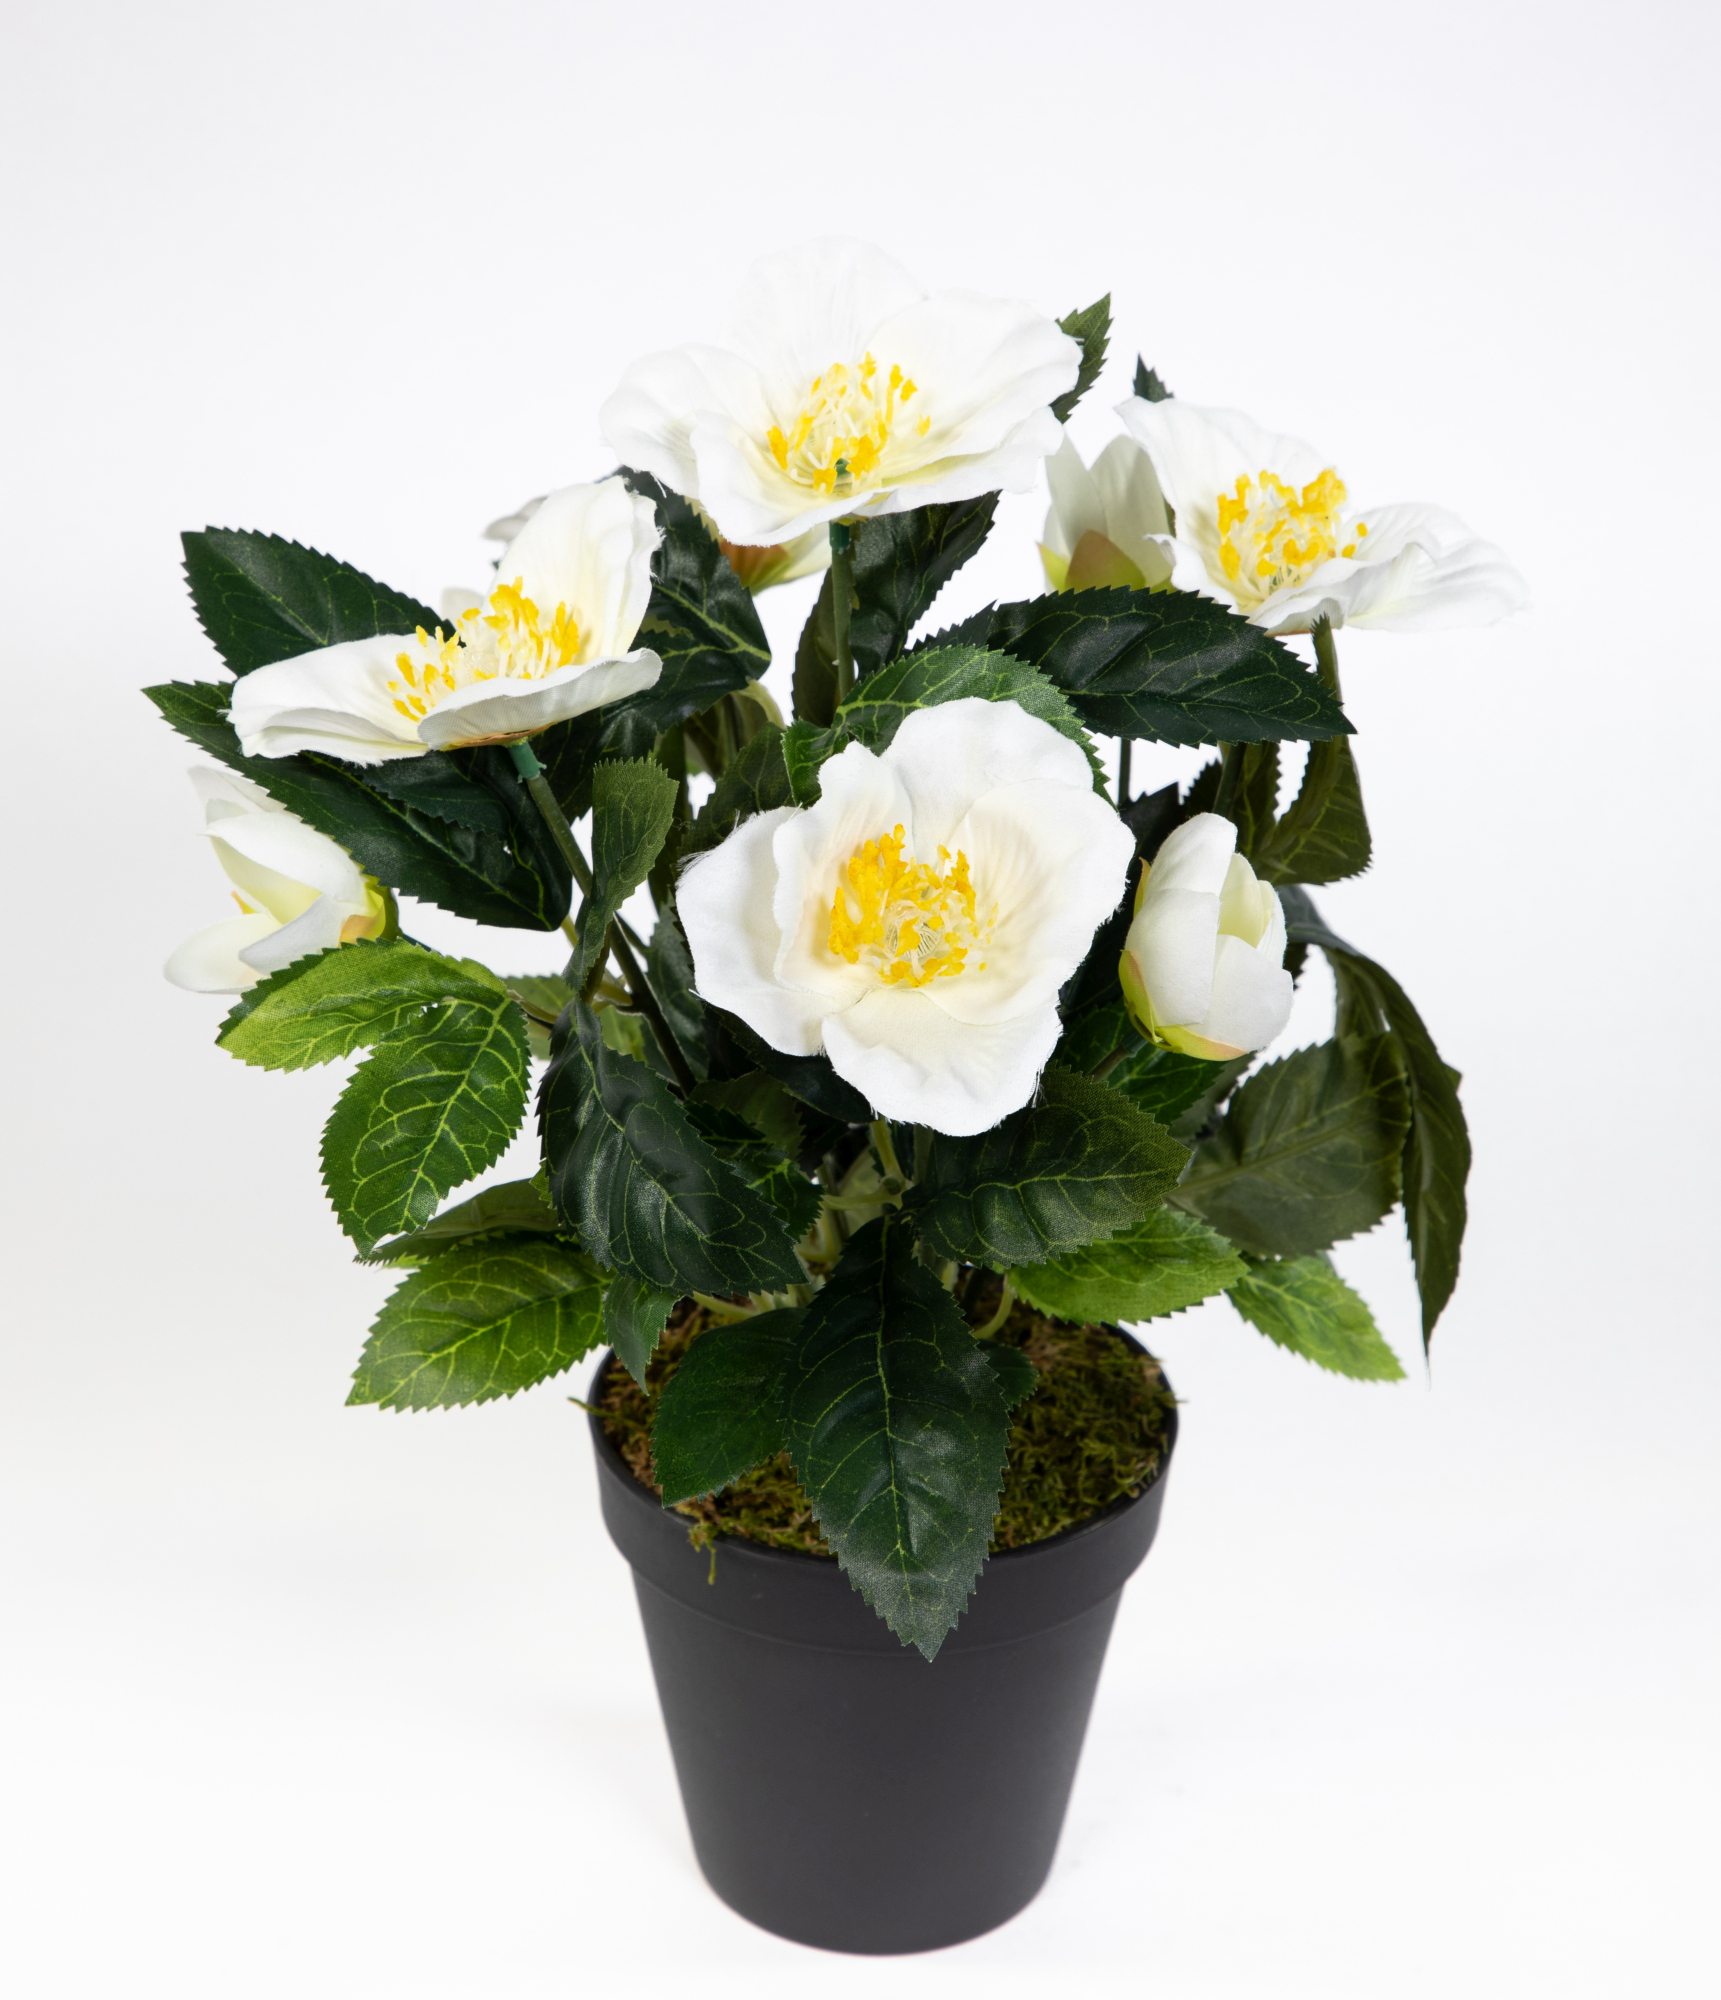 Christrosenbusch 32cm weiß im Topf GA Kunstblumen künstliche Christrose Pflanzen Blumen Kunstblumen